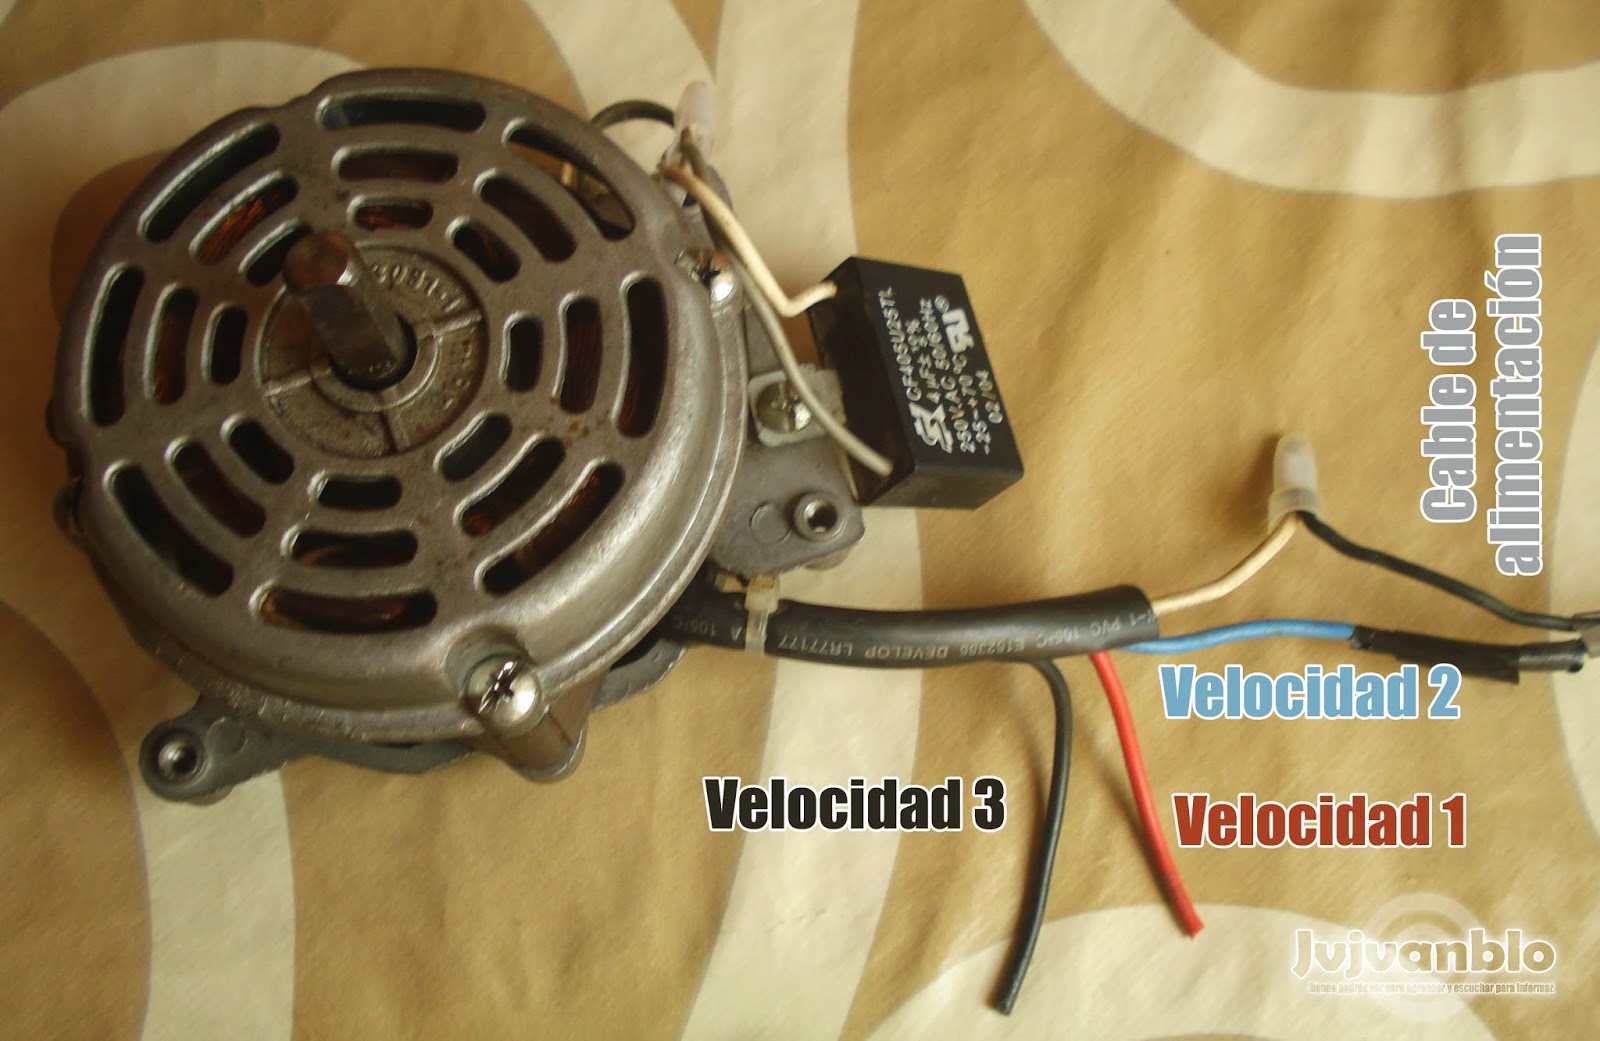 como se conecta un capacitor en un motor de ventilador